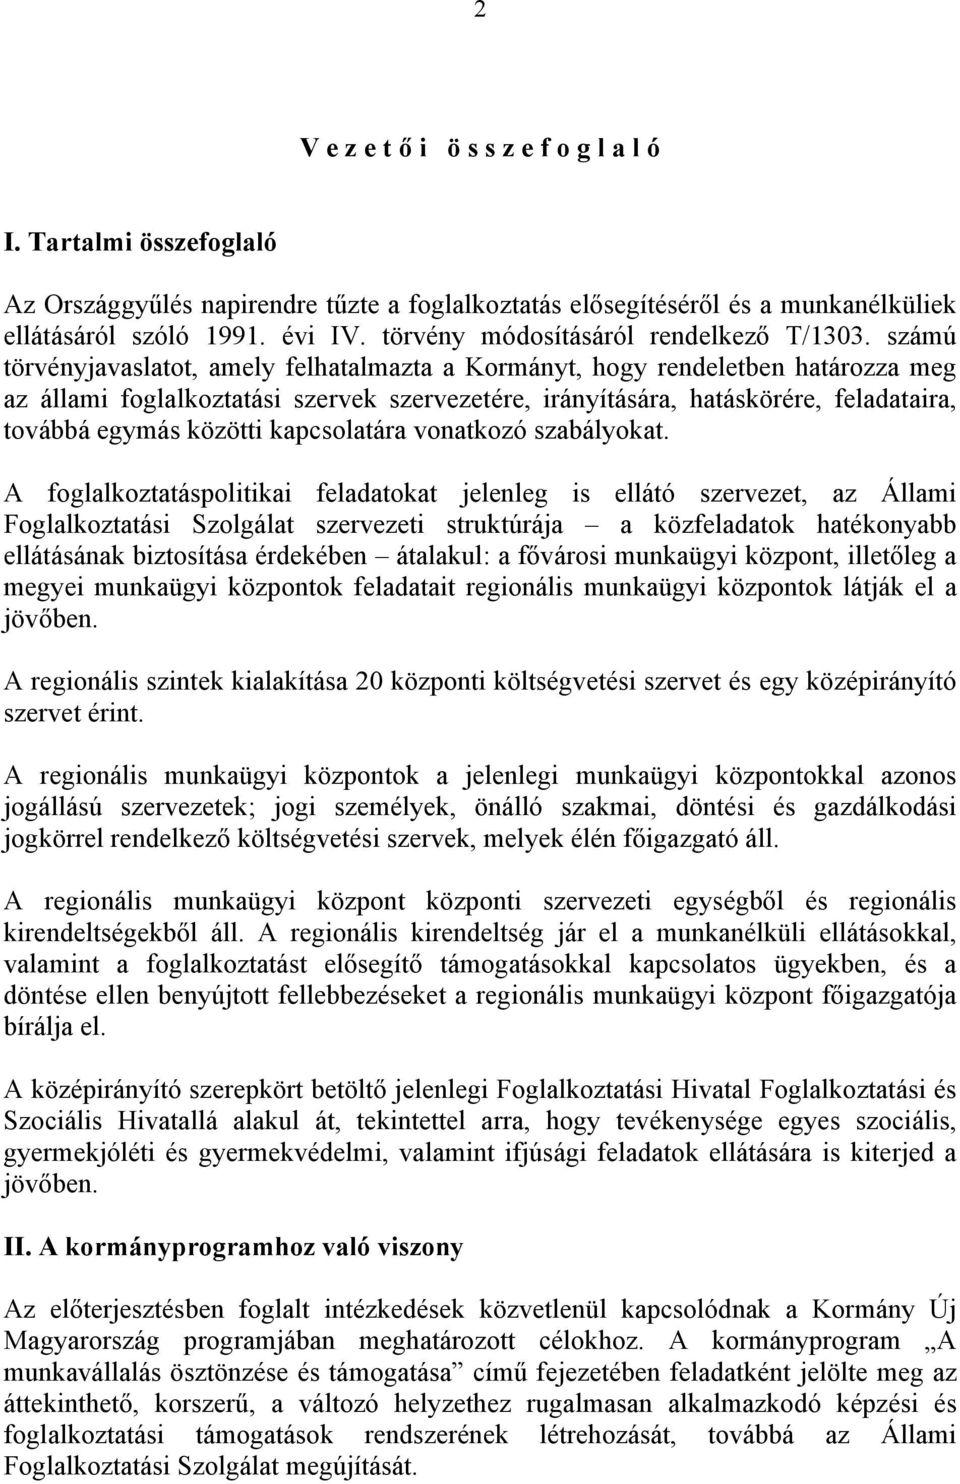 számú törvényjavaslatot, amely felhatalmazta a Kormányt, hogy rendeletben határozza meg az állami foglalkoztatási szervek szervezetére, irányítására, hatáskörére, feladataira, továbbá egymás közötti